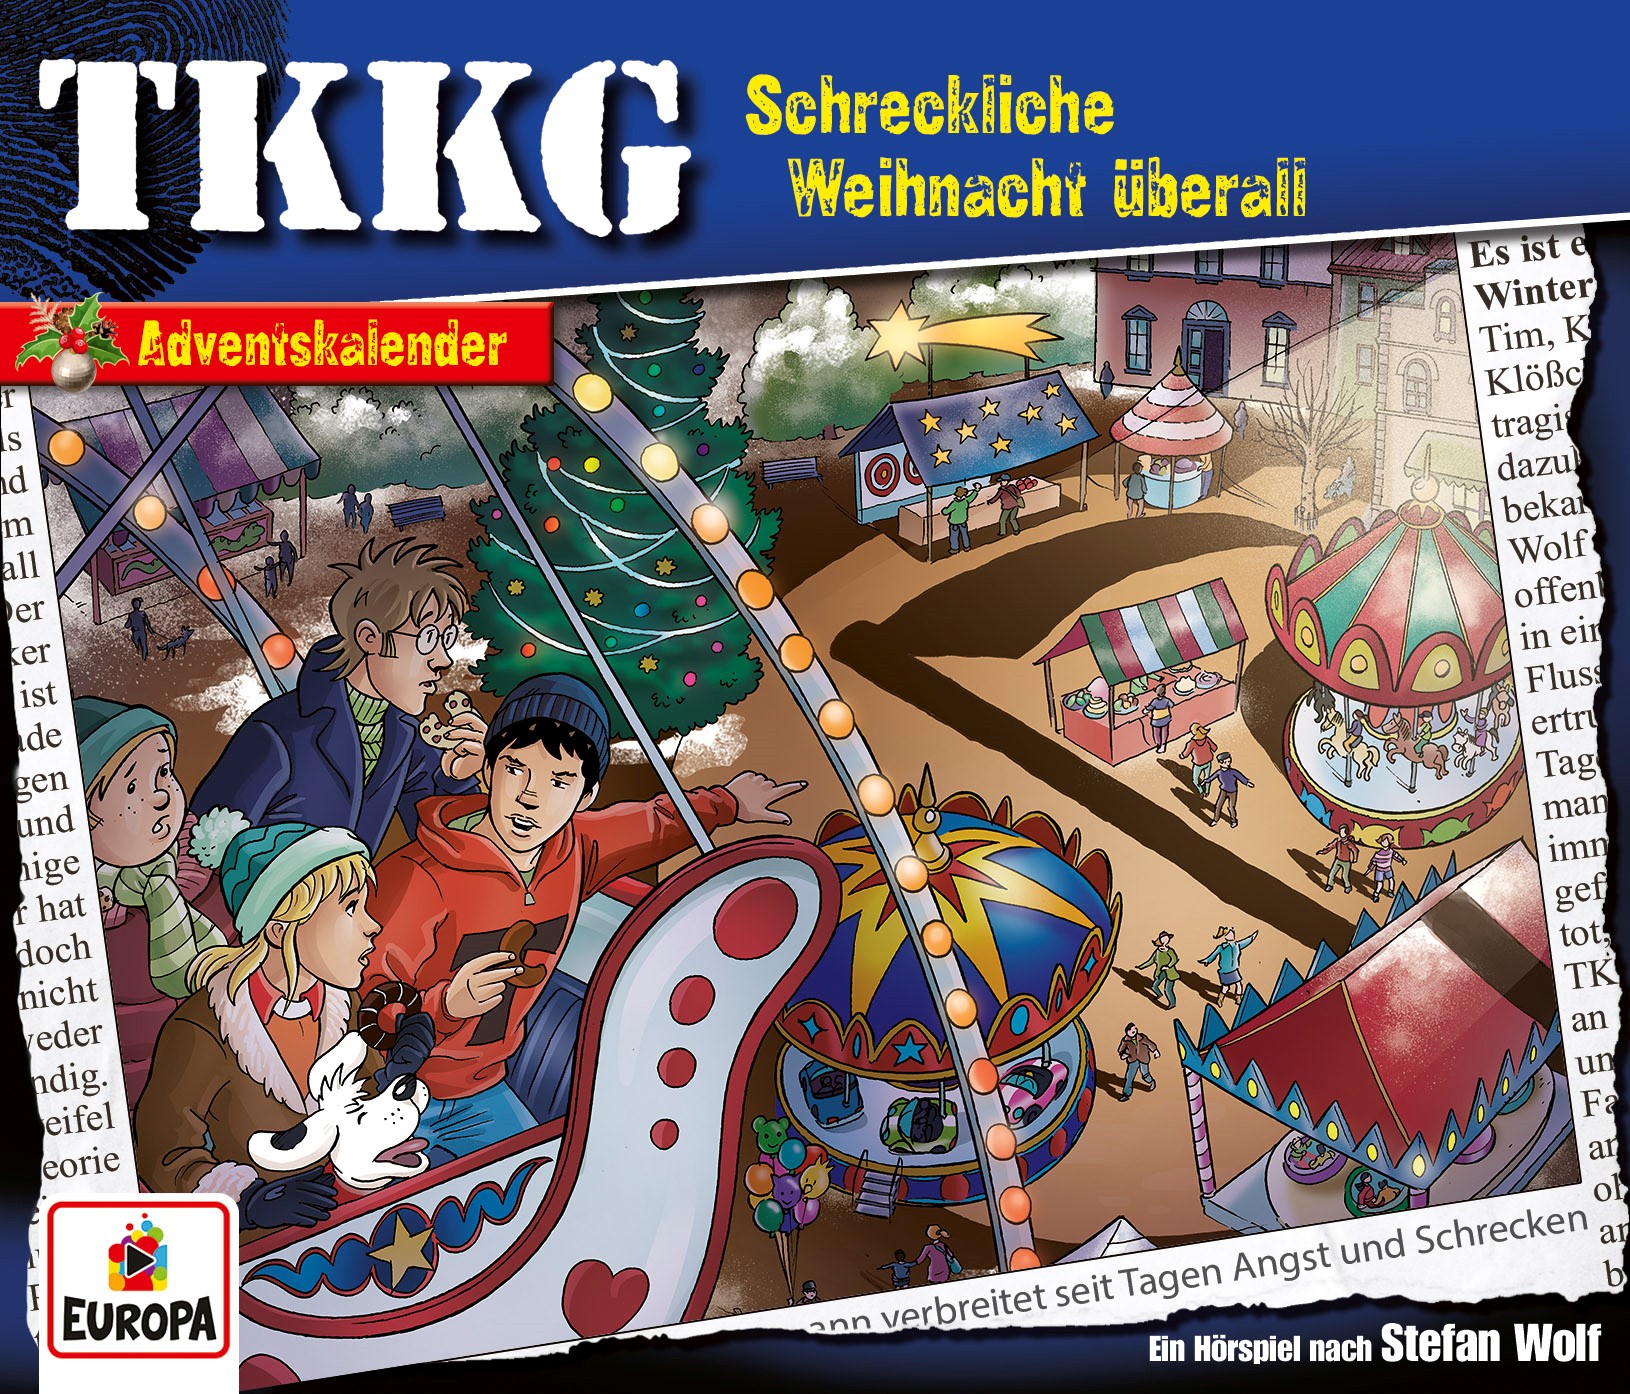 TKKG HörspielSchreckliche Weihnacht überall (Adventskalender)